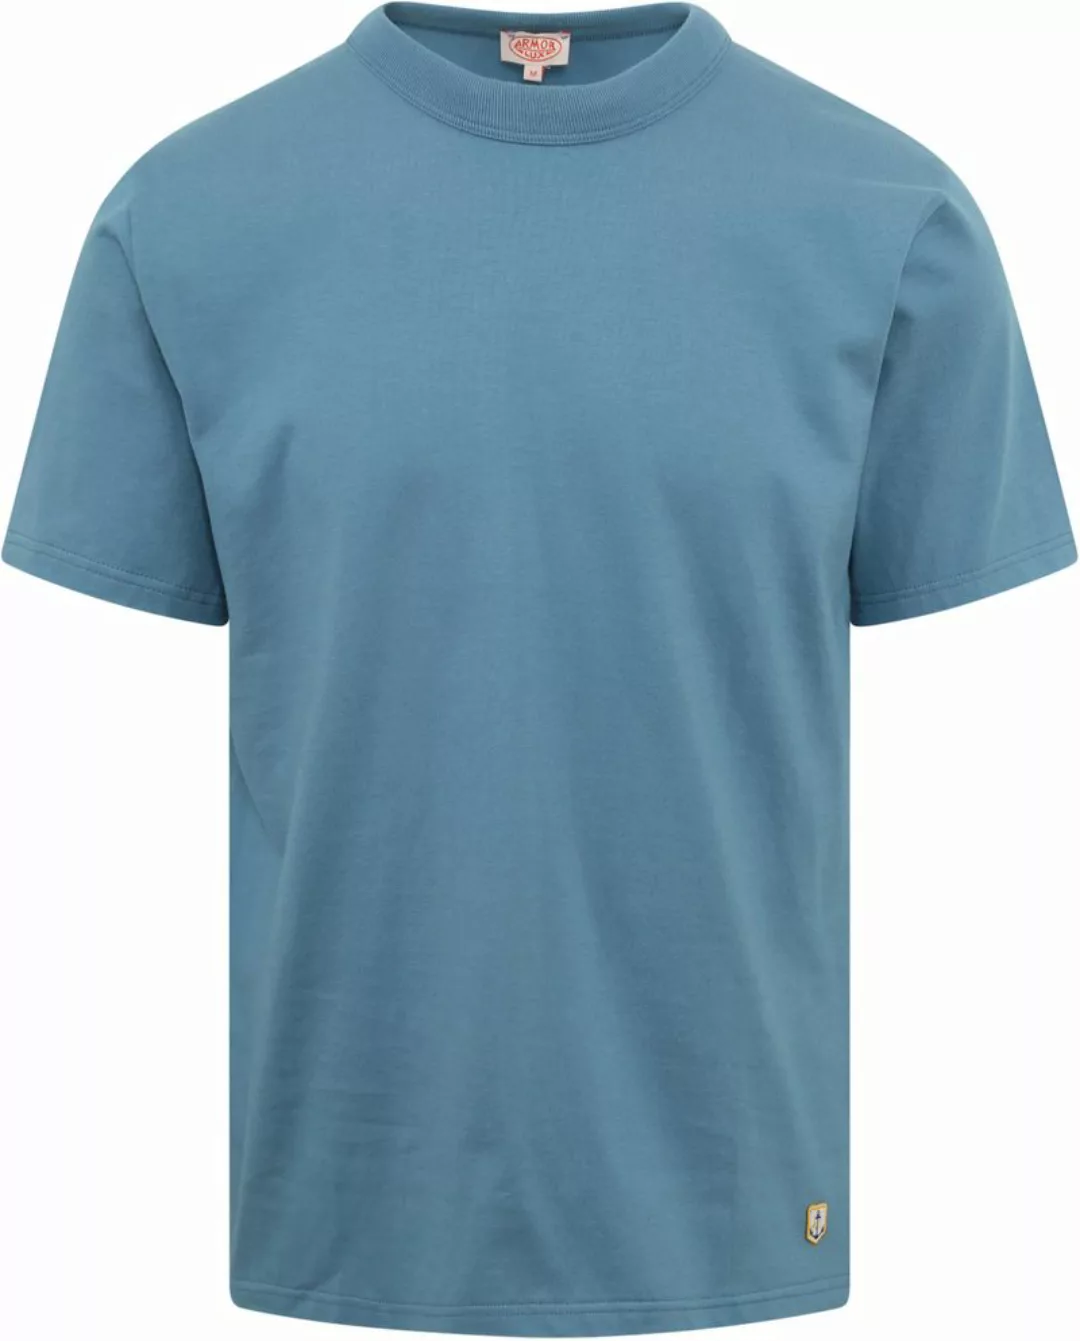 Armor-Lux T-Shirt Blau - Größe L günstig online kaufen